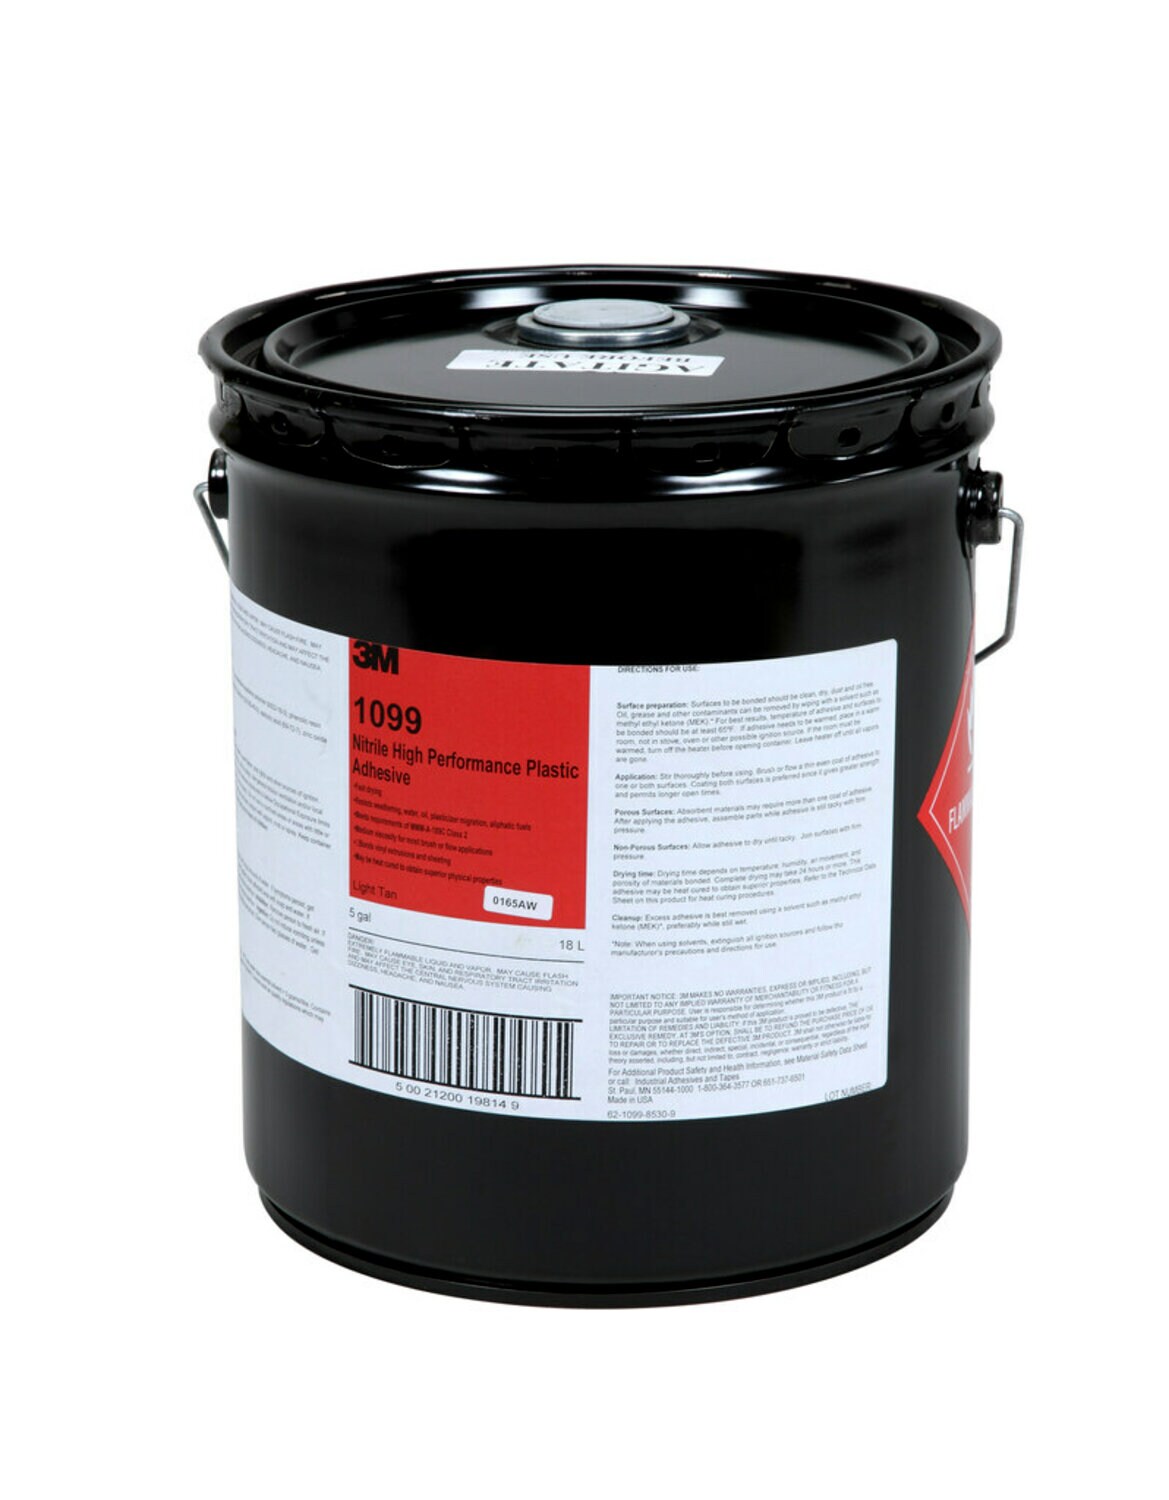 7000121205 - 3M Nitrile High Performance Plastic Adhesive 1099L, Tan, 5 Gallon Pour
Spout Drum (Pail)